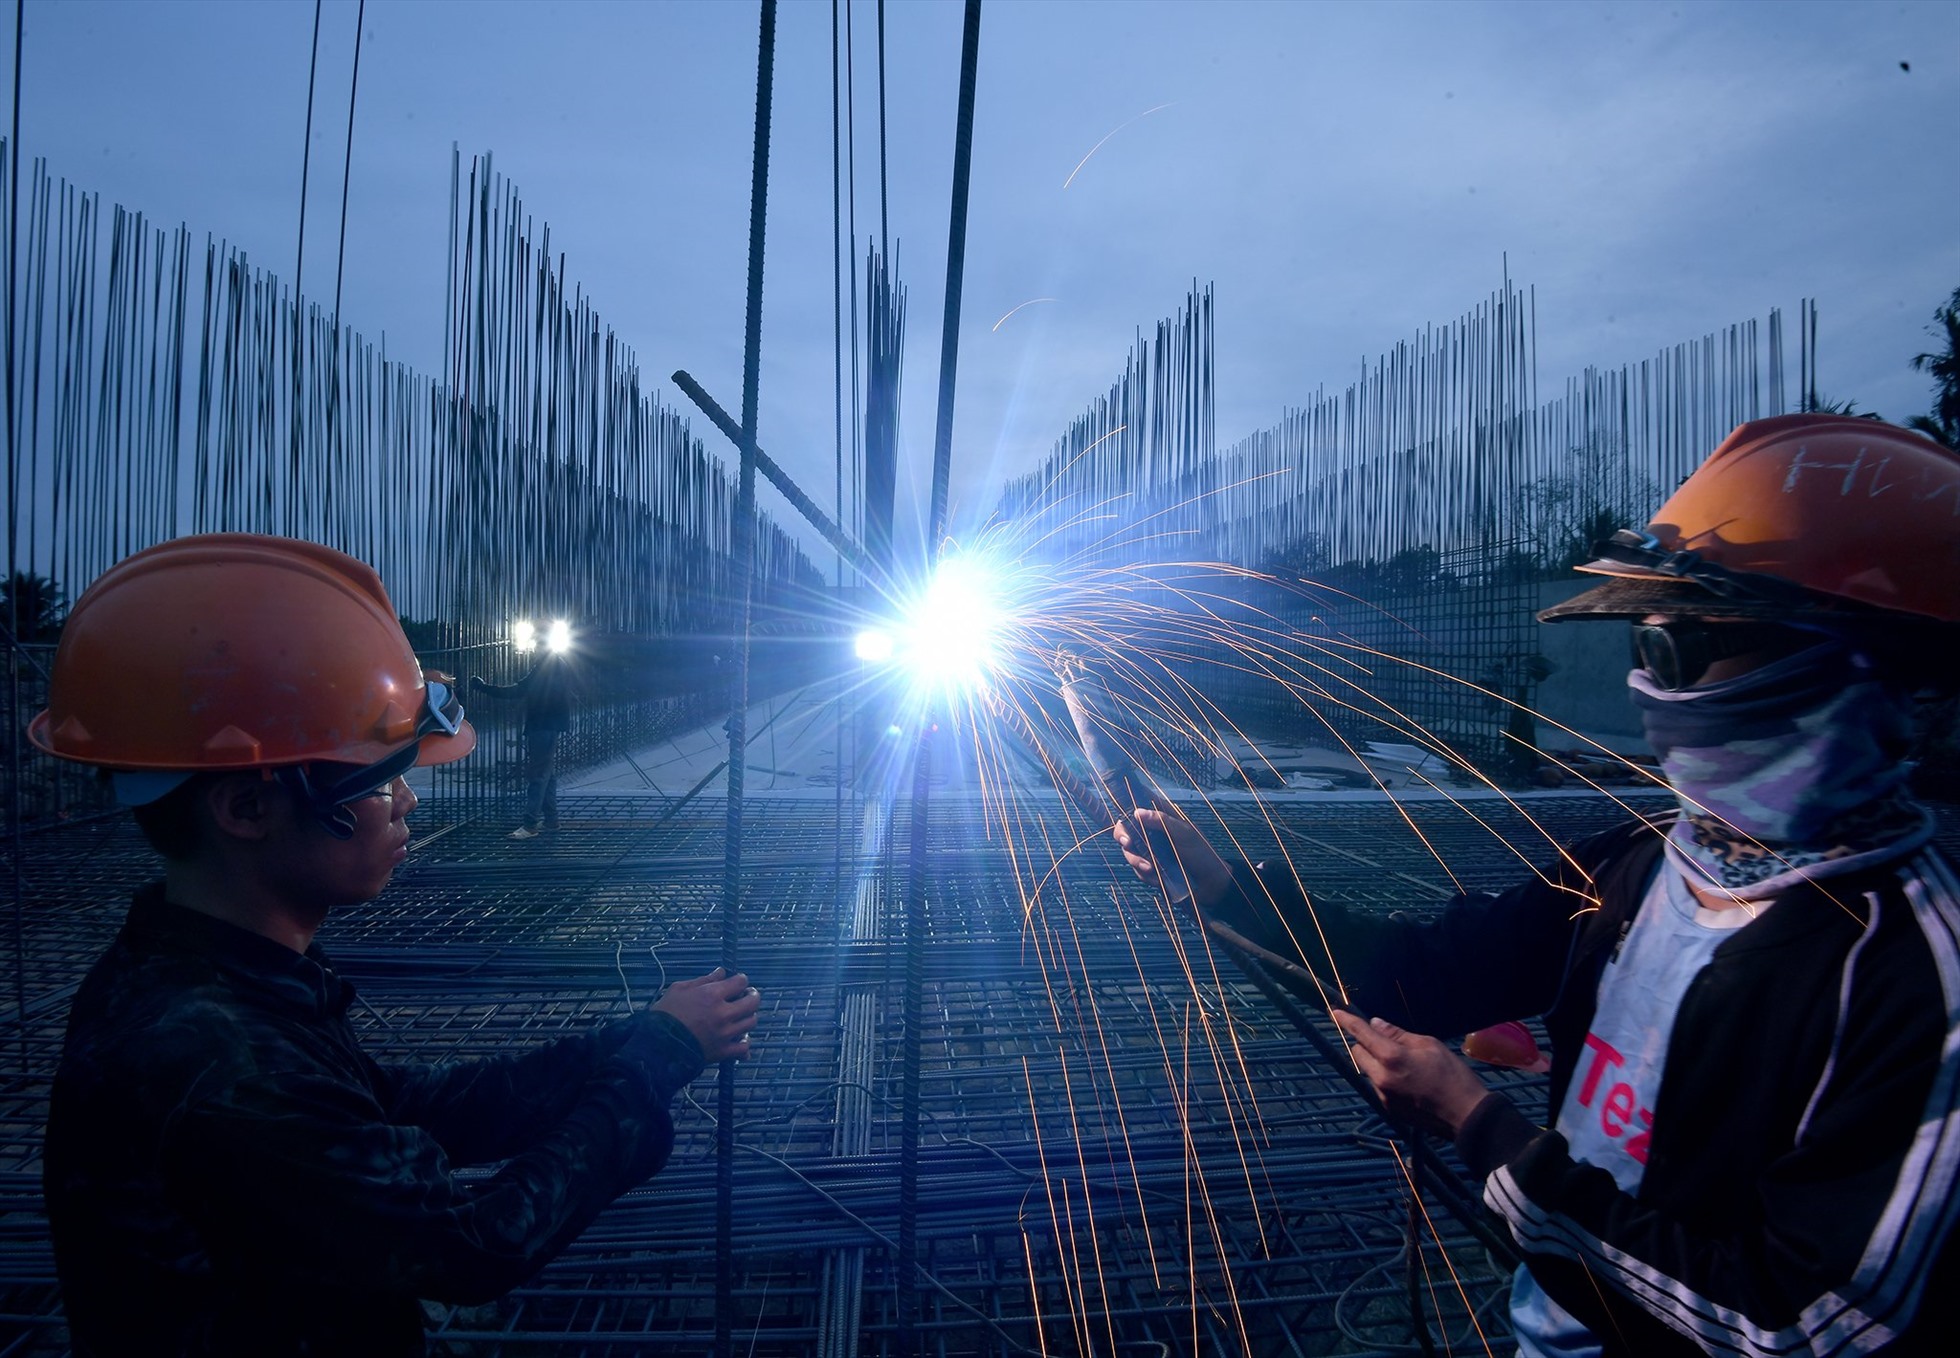 Tại công trường cầu Rạch Múc, khoảng 70 công nhân được nhà thầu bố trí ca làm việc từ sáng sớm đến khoảng 20h mỗi ngày. Hiện công trình này đã hoàn thành 76% khối lượng.